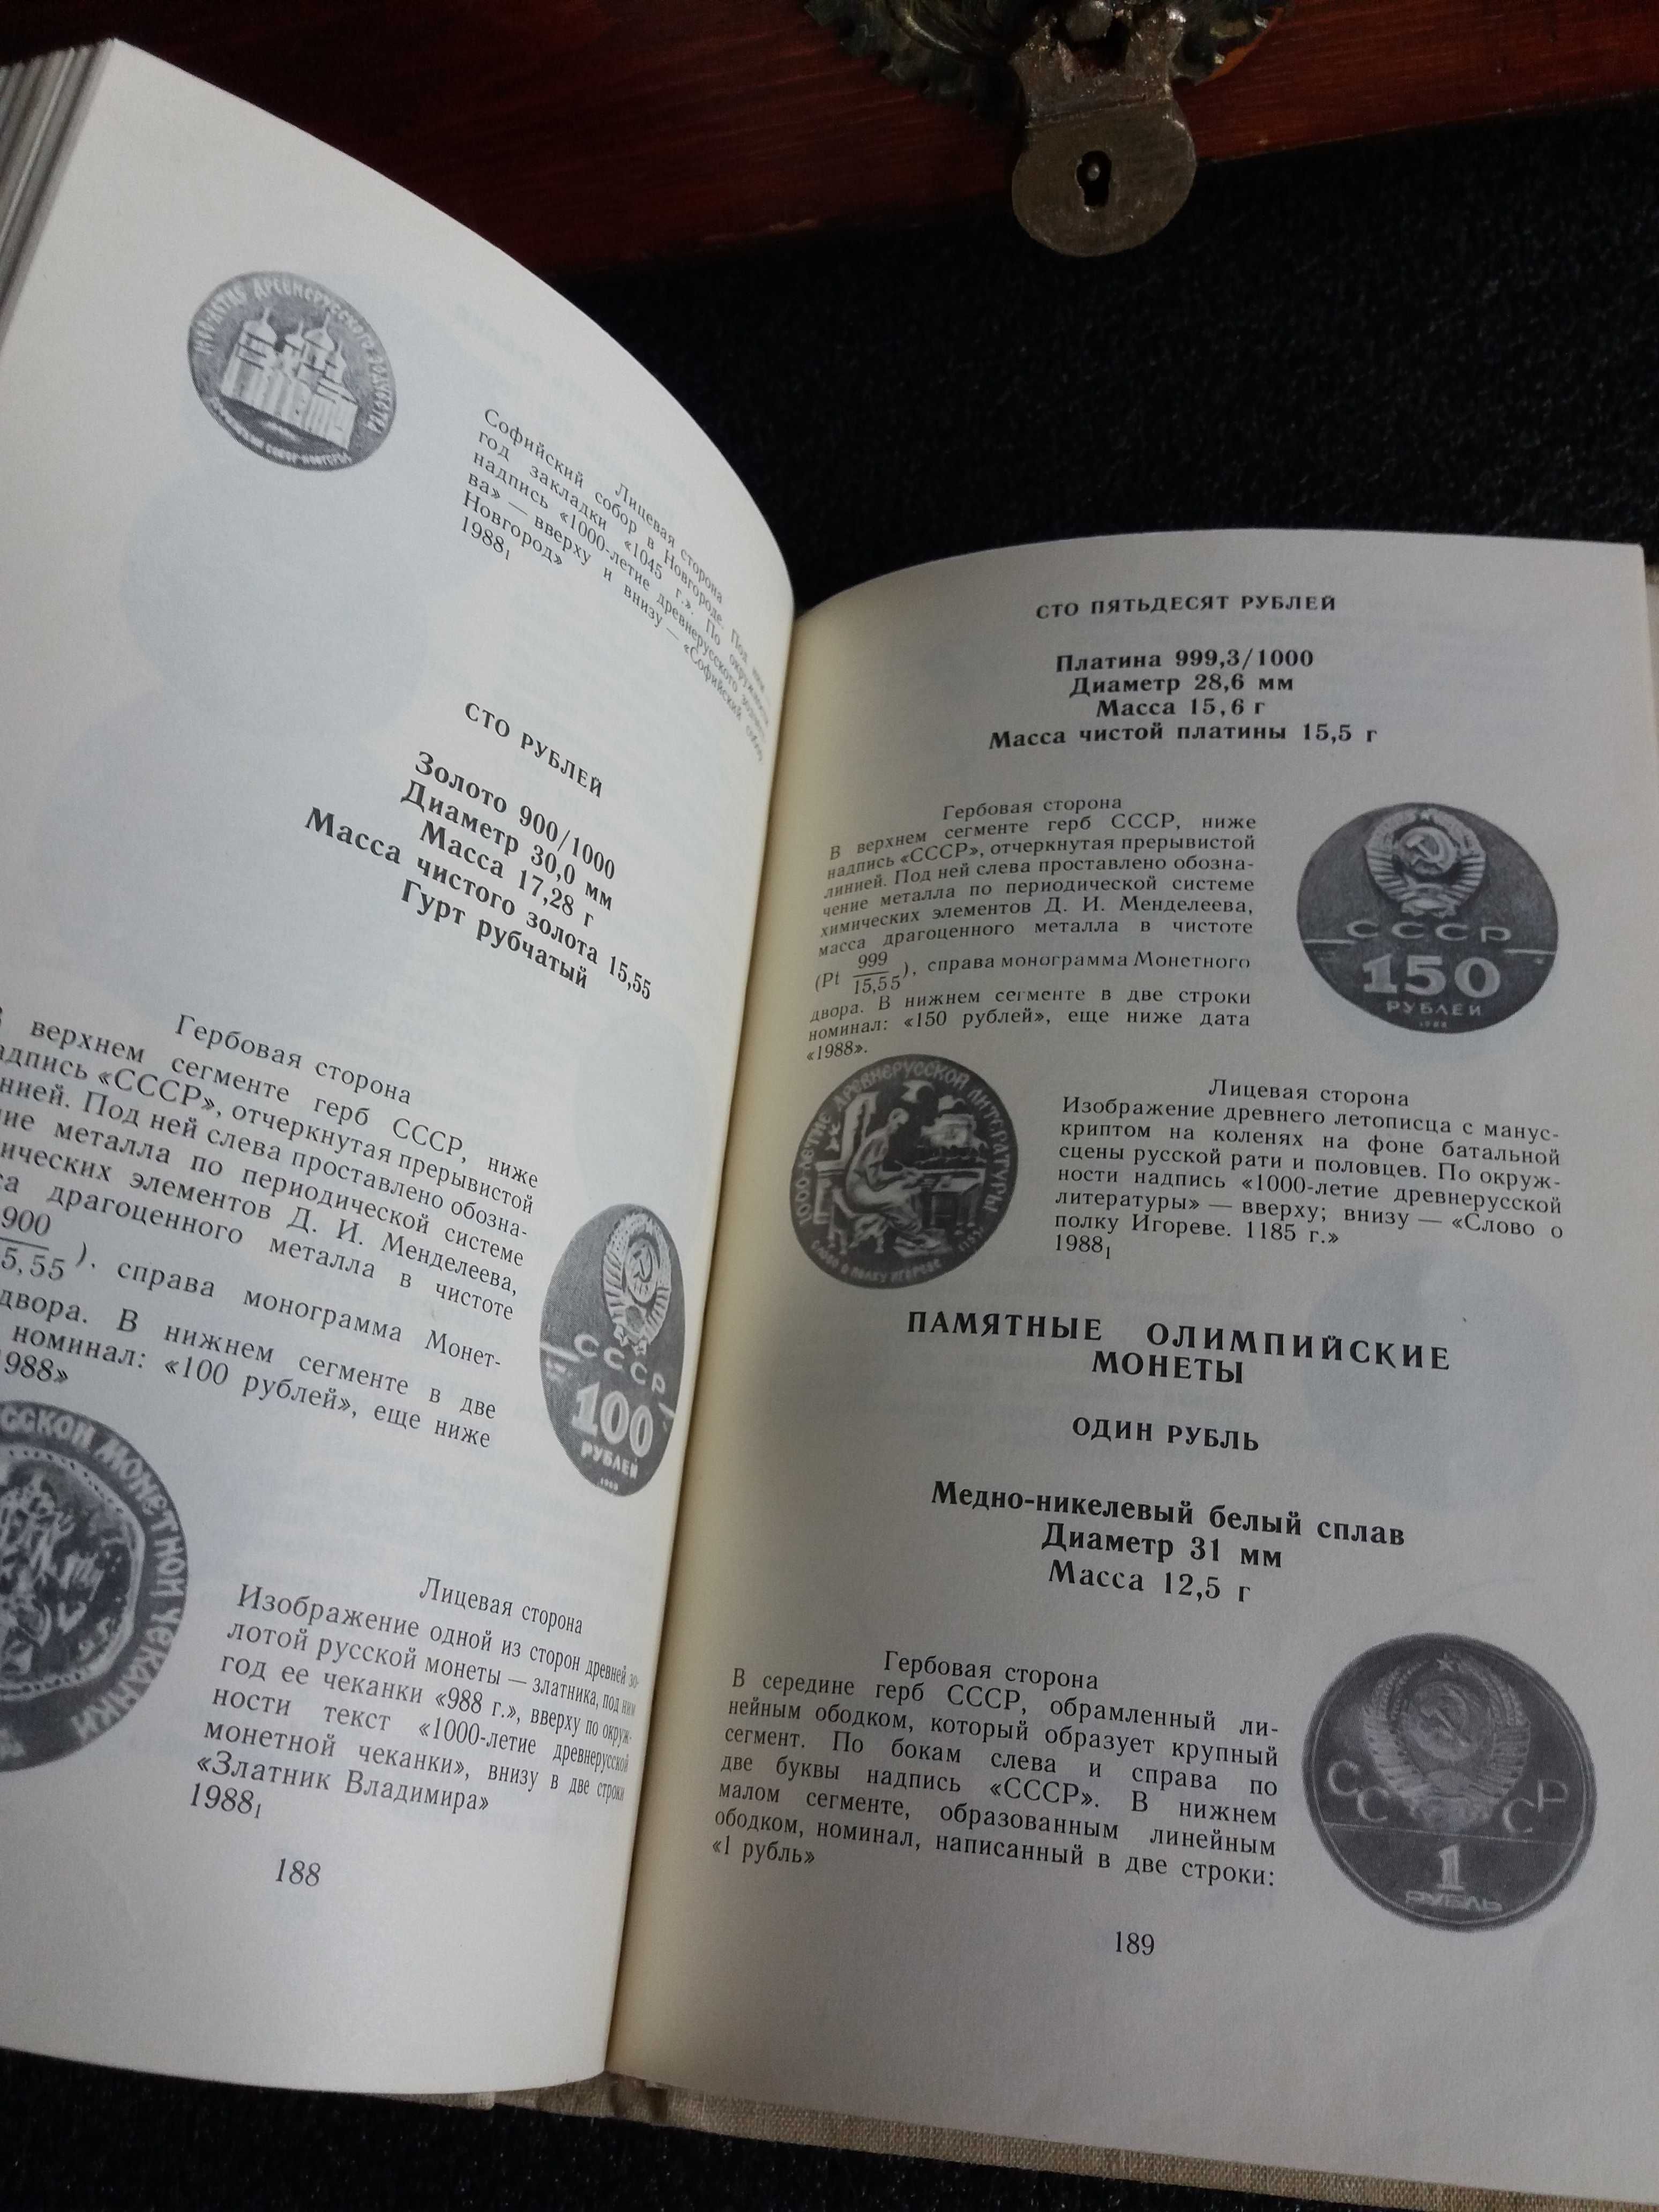 Каталог "Монеты СССР" 1989 року.